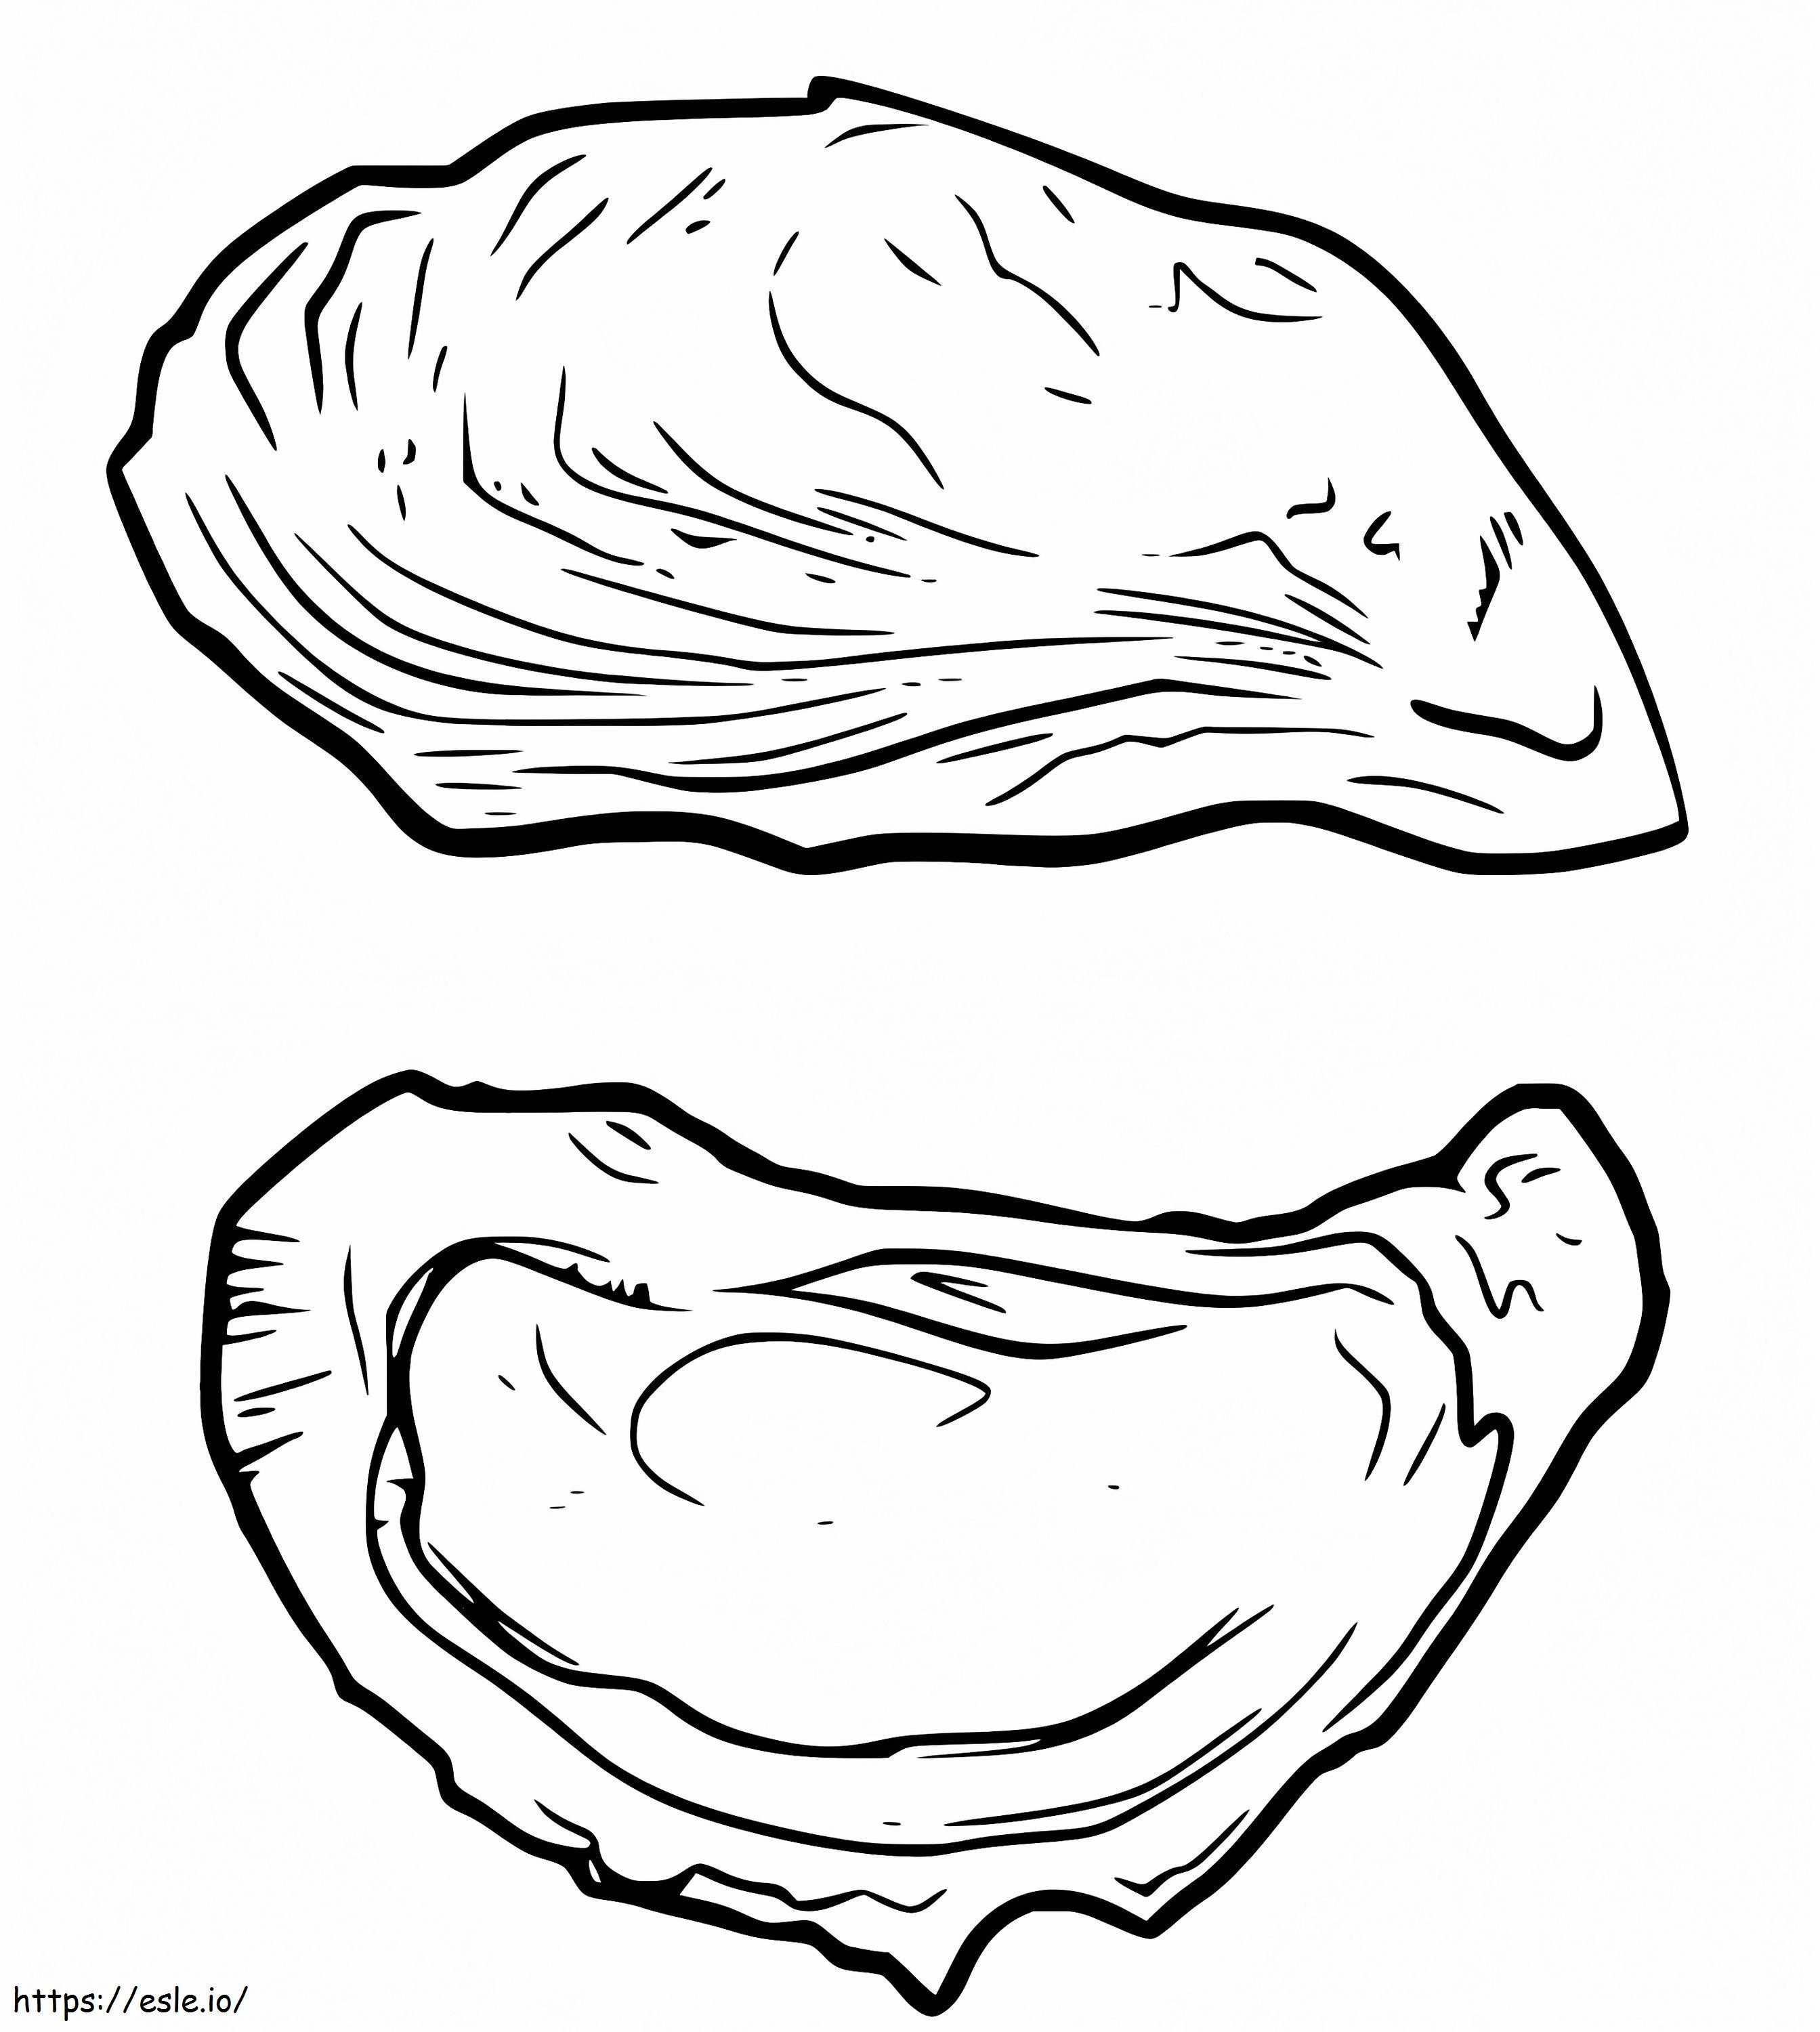 Conchas de ostras para colorear